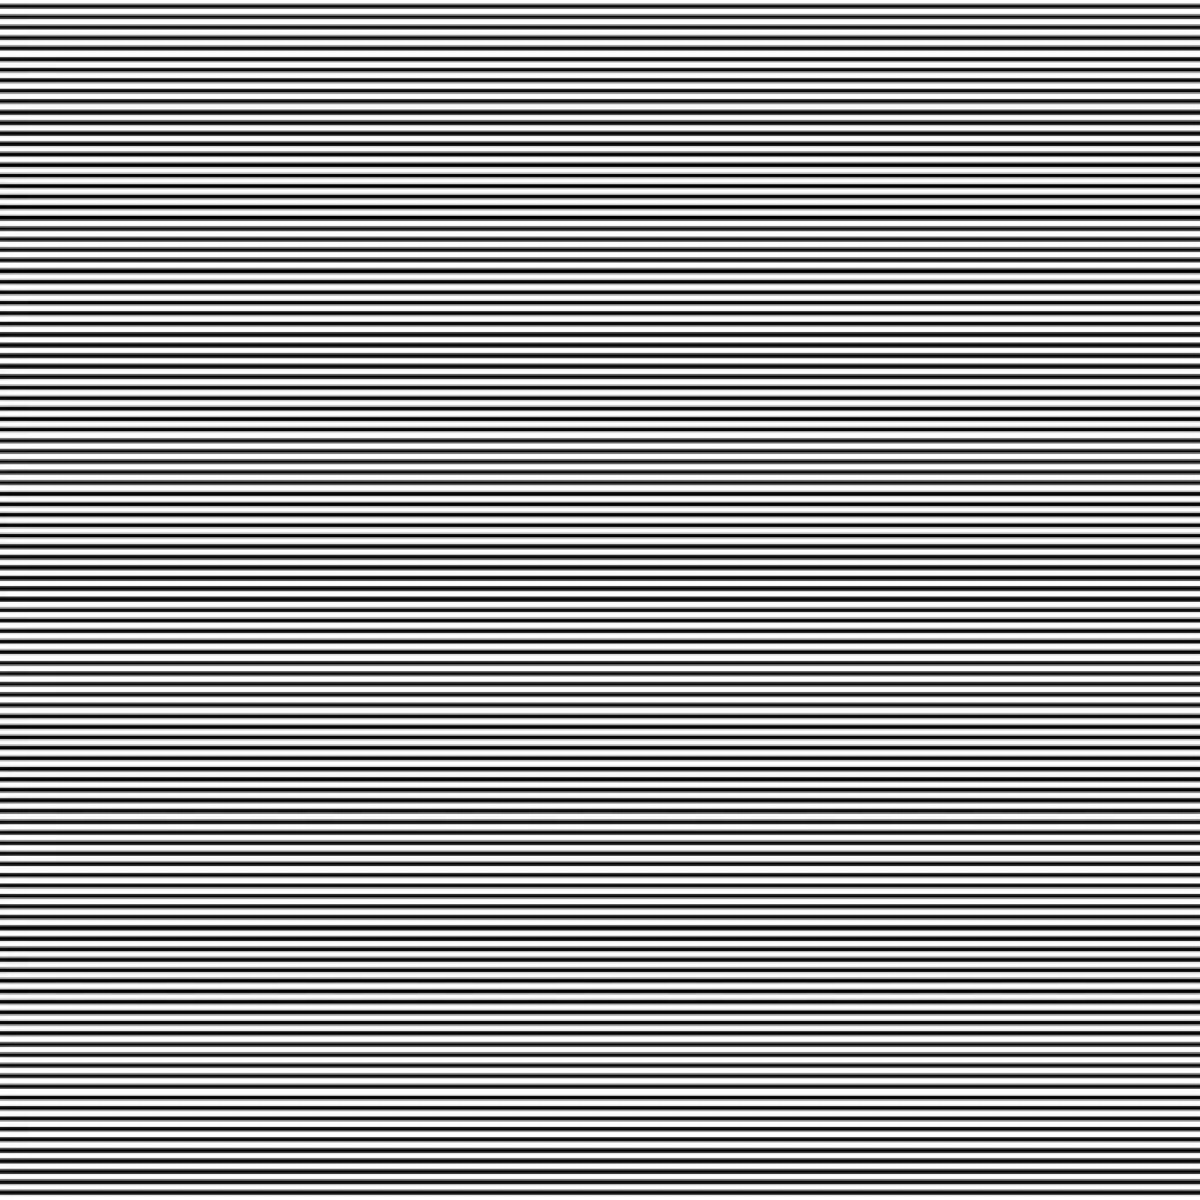 红白格子条纹背景背景图片下载_3333x3333像素JPG格式_编号1ygfgrex1_图精灵